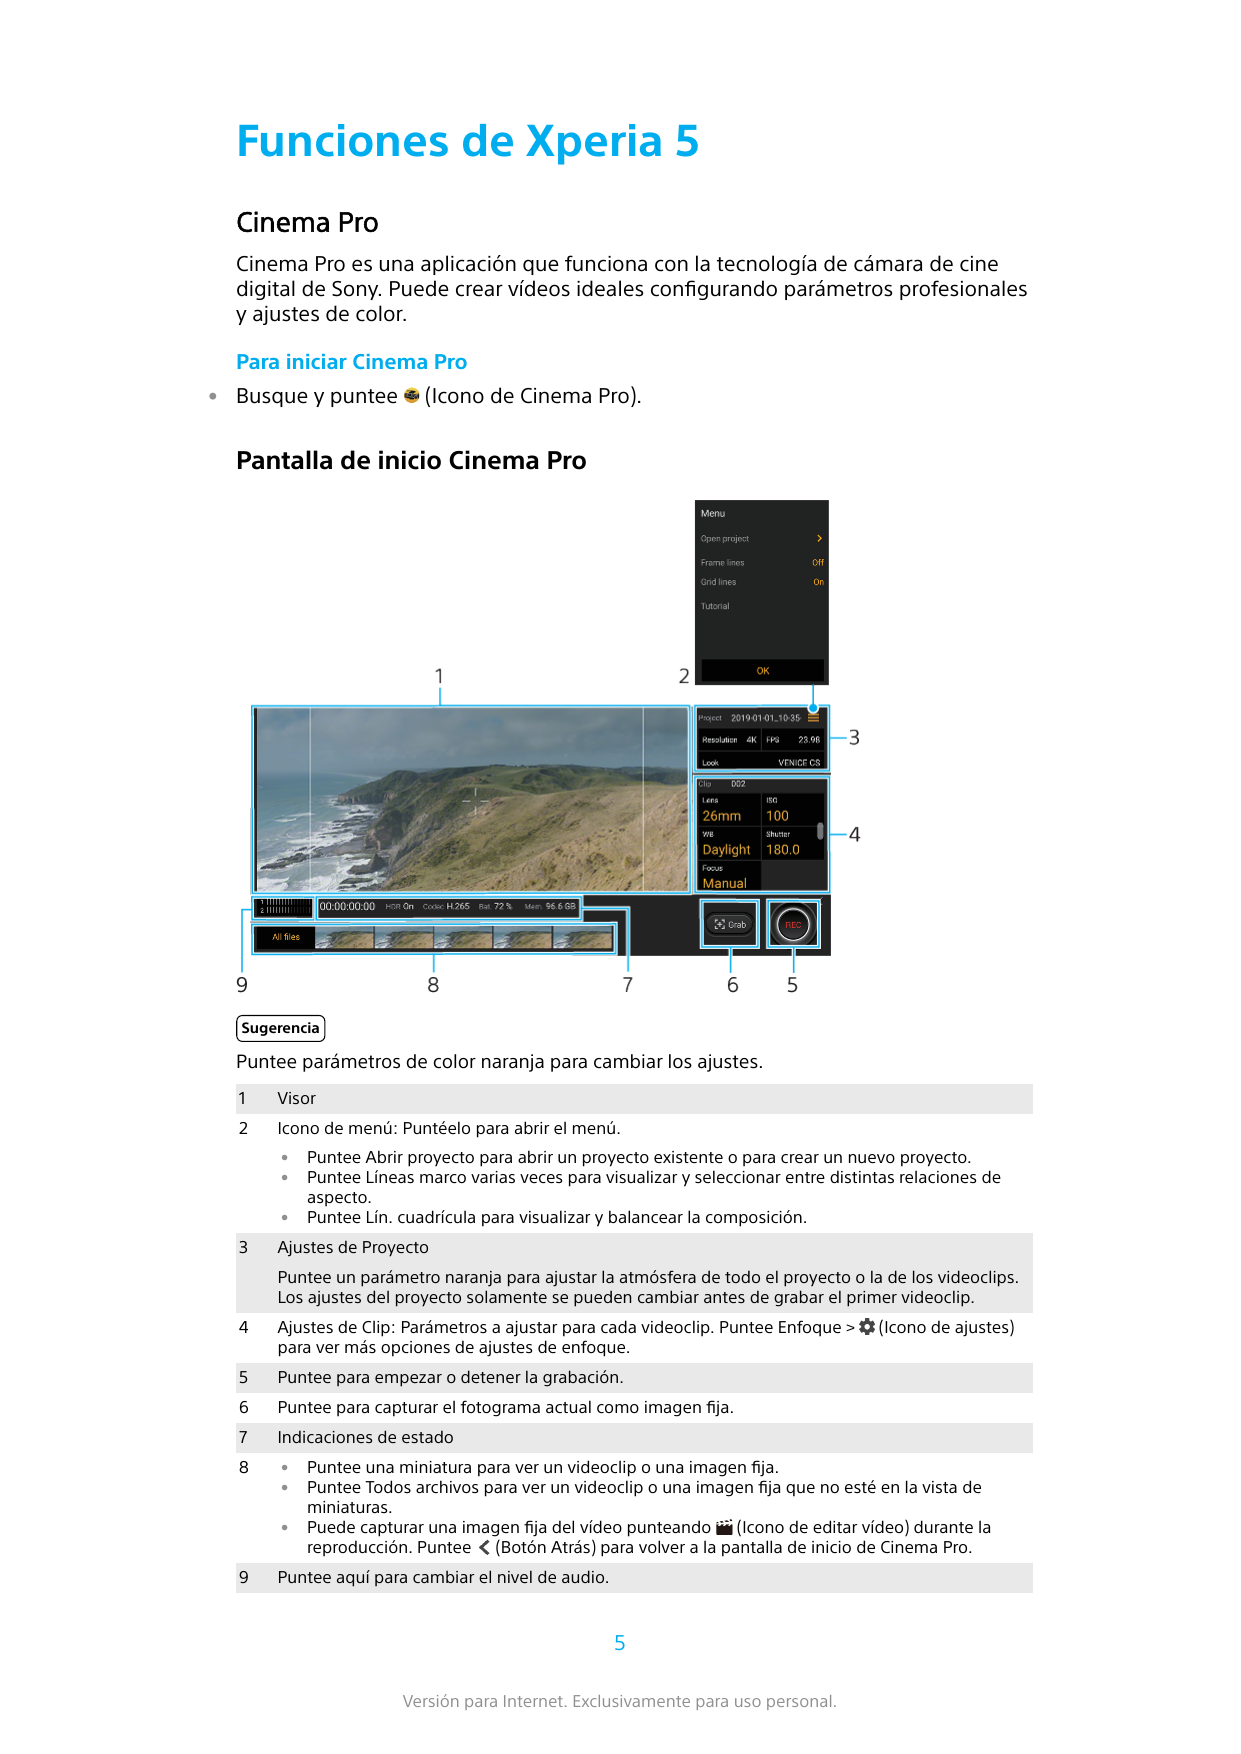 Funciones de Xperia 5Cinema ProCinema Pro es una aplicación que funciona con la tecnología de cámara de cinedigital de Sony. Pue